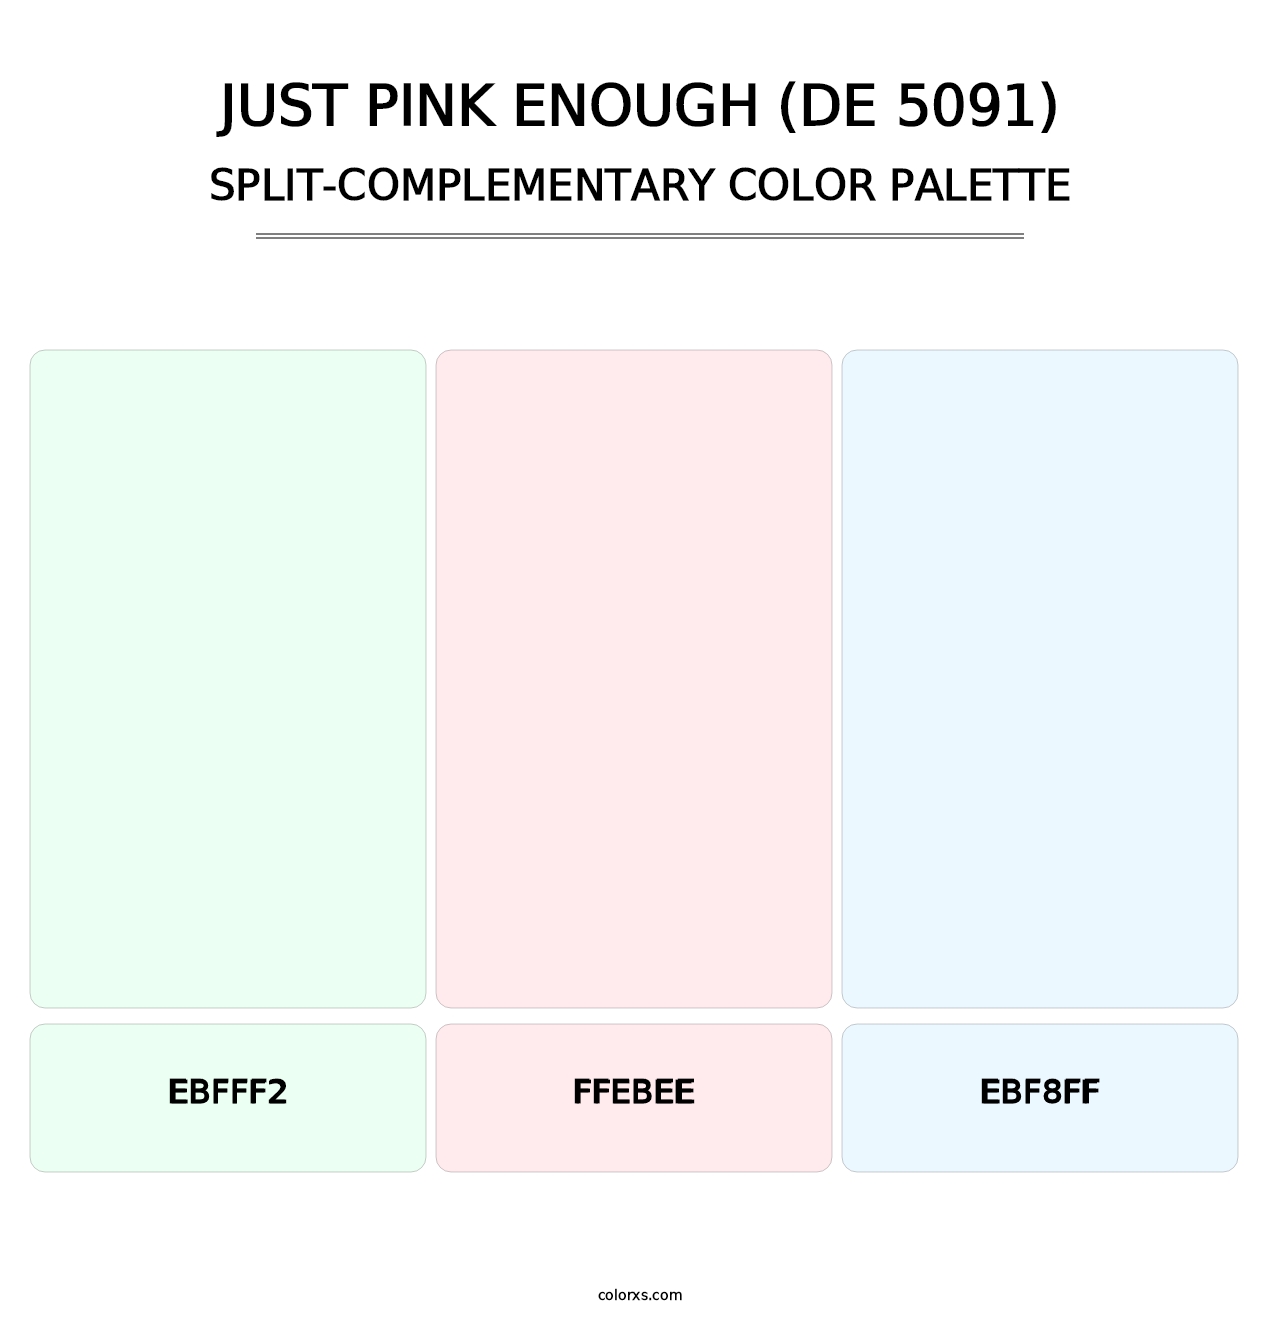 Just Pink Enough (DE 5091) - Split-Complementary Color Palette